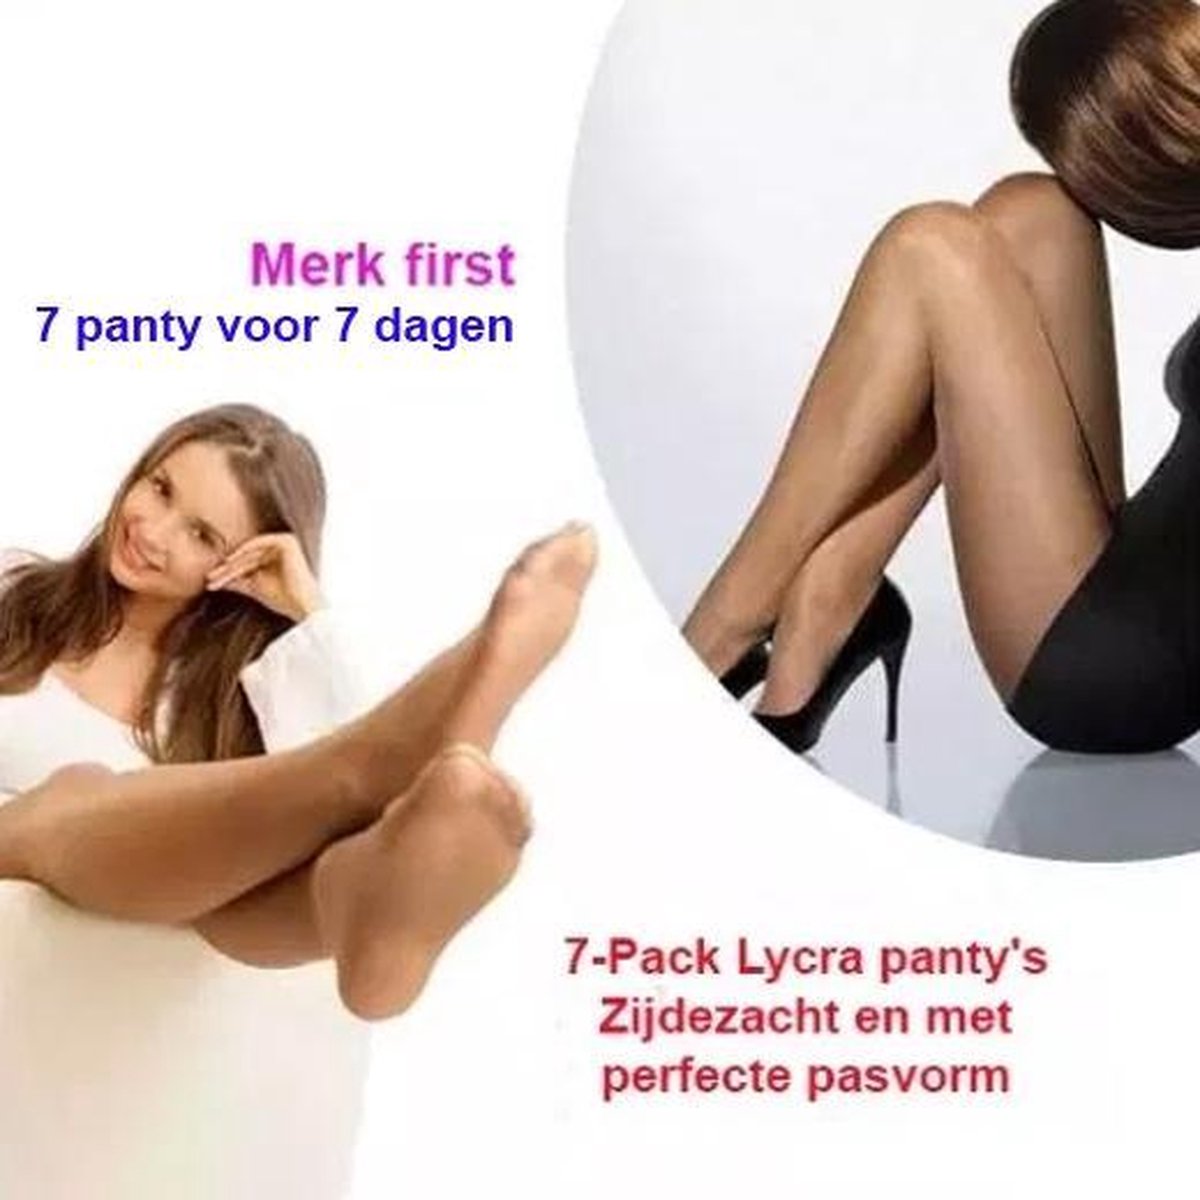 7-Pack Lycra panty's Zijdezacht en met perfecte pasvorm | Kleur Hazel | 44-46